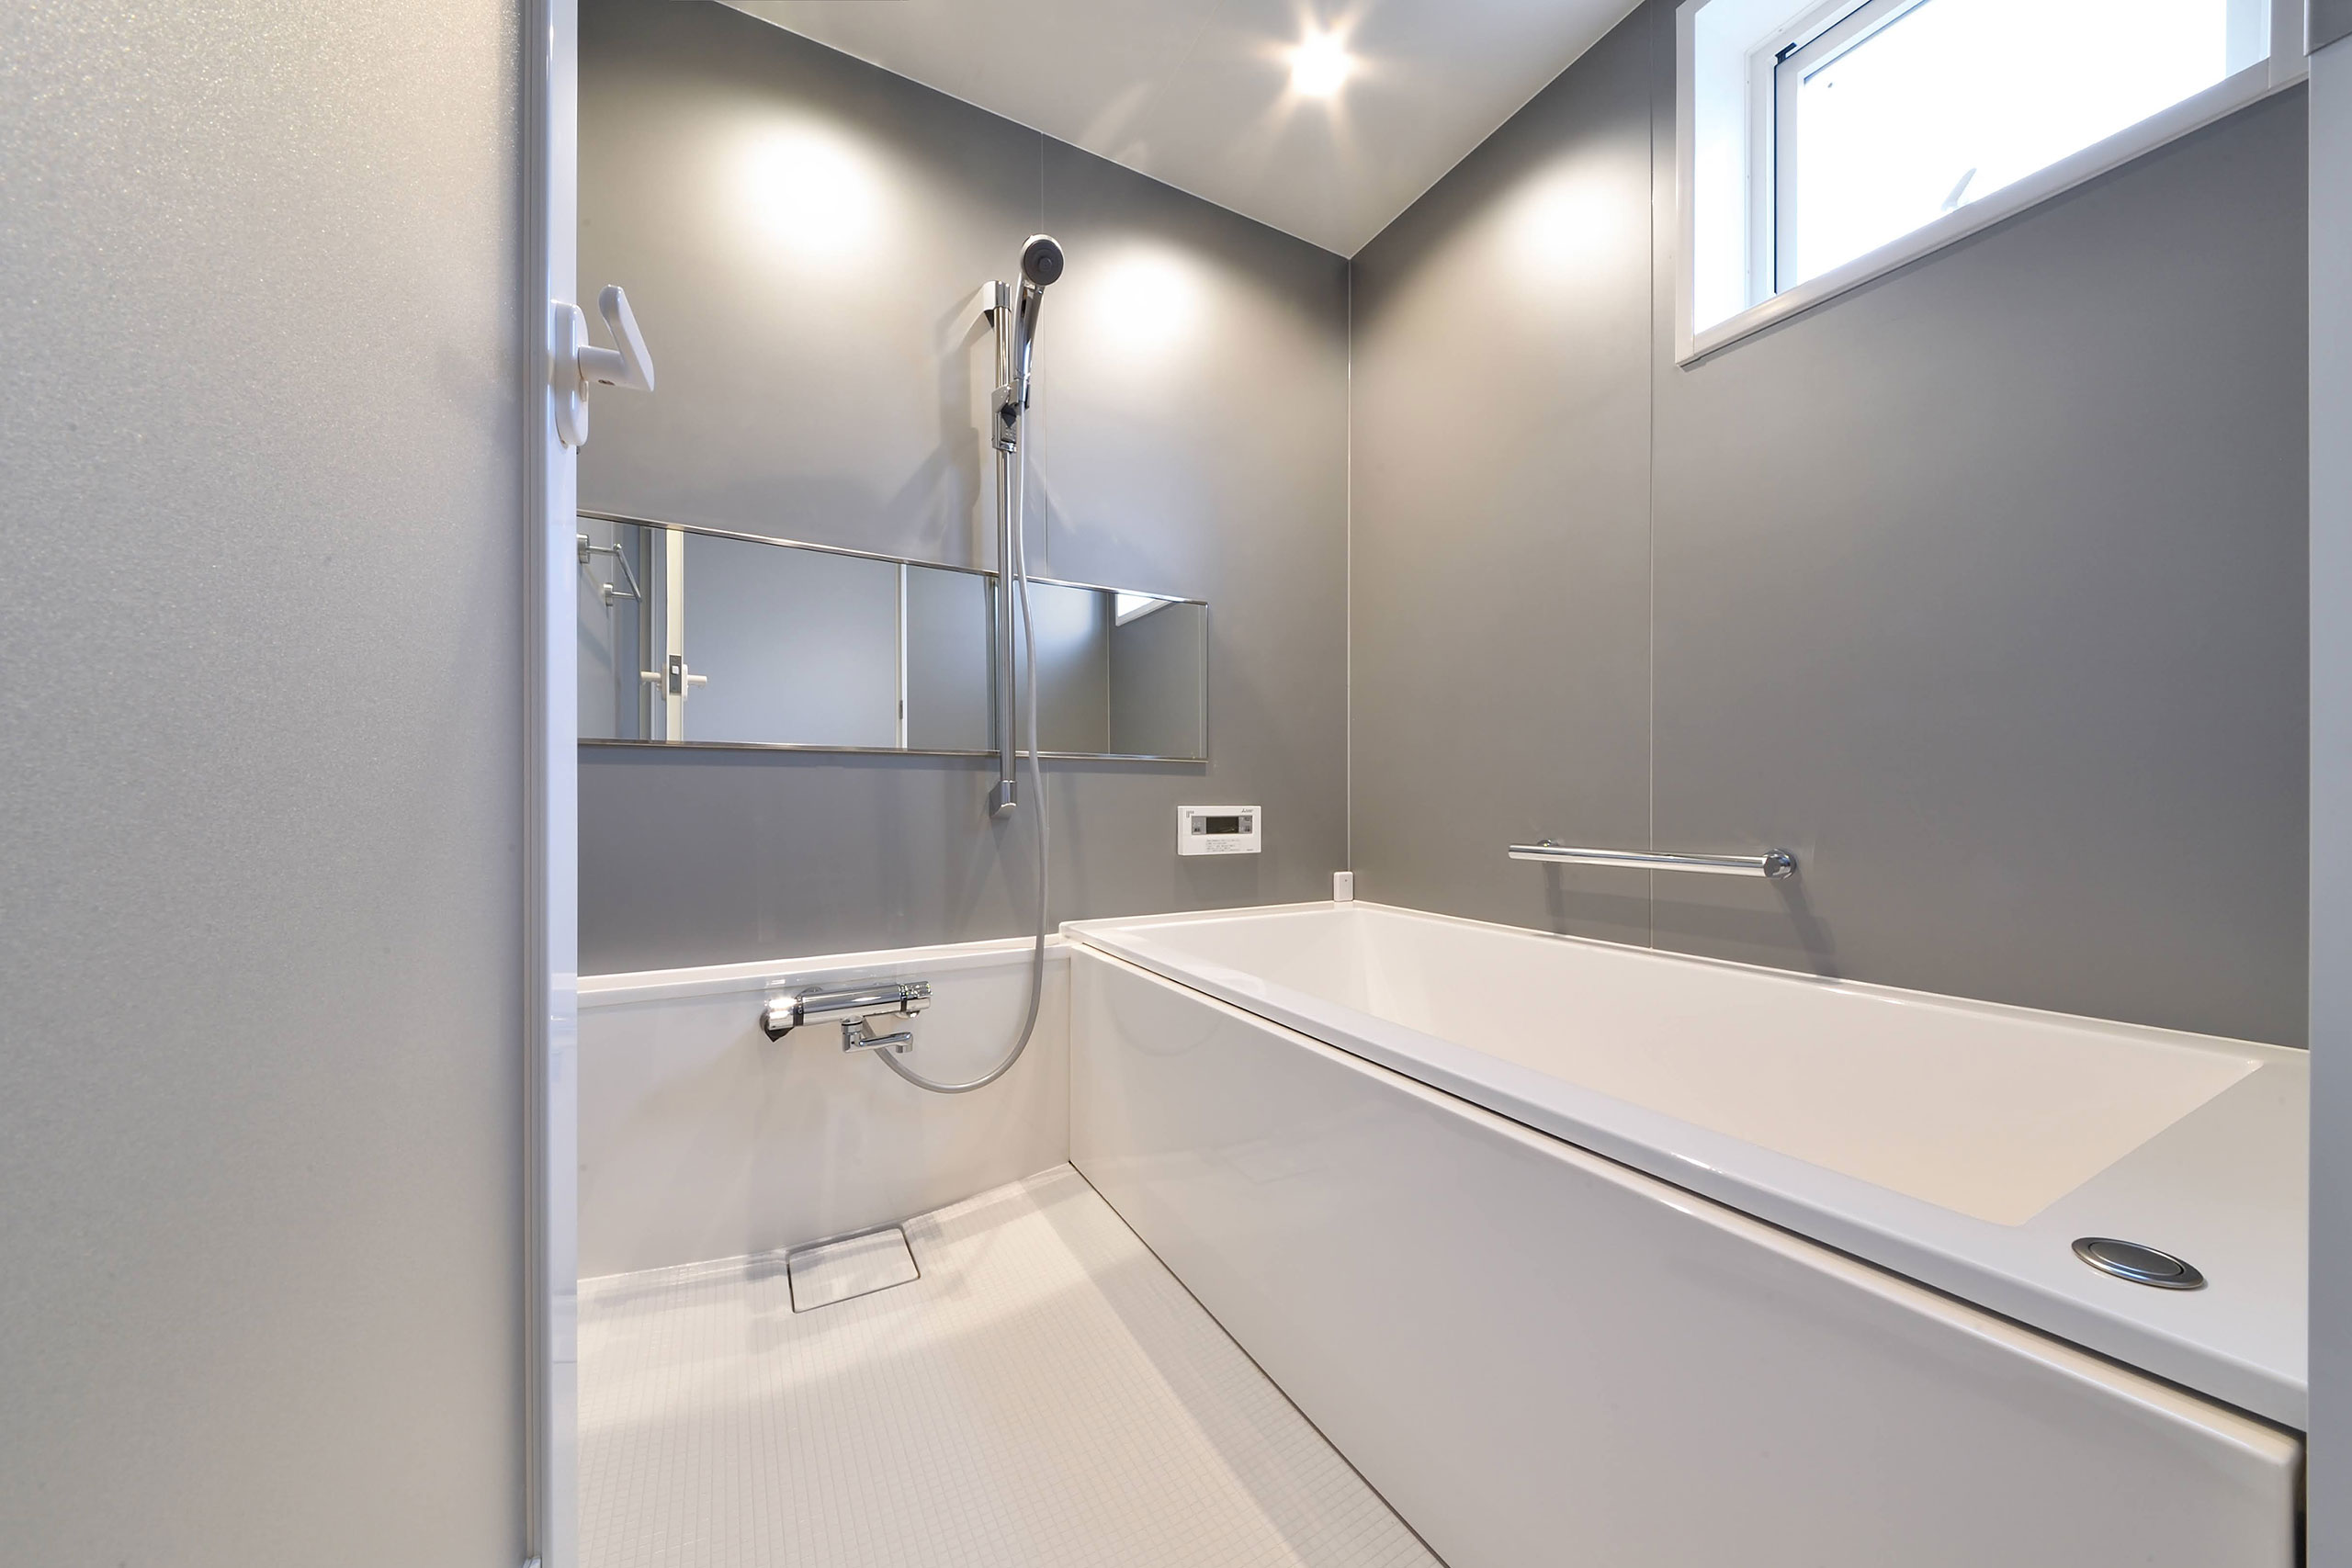 デザイン性の高いユニットバス浴室